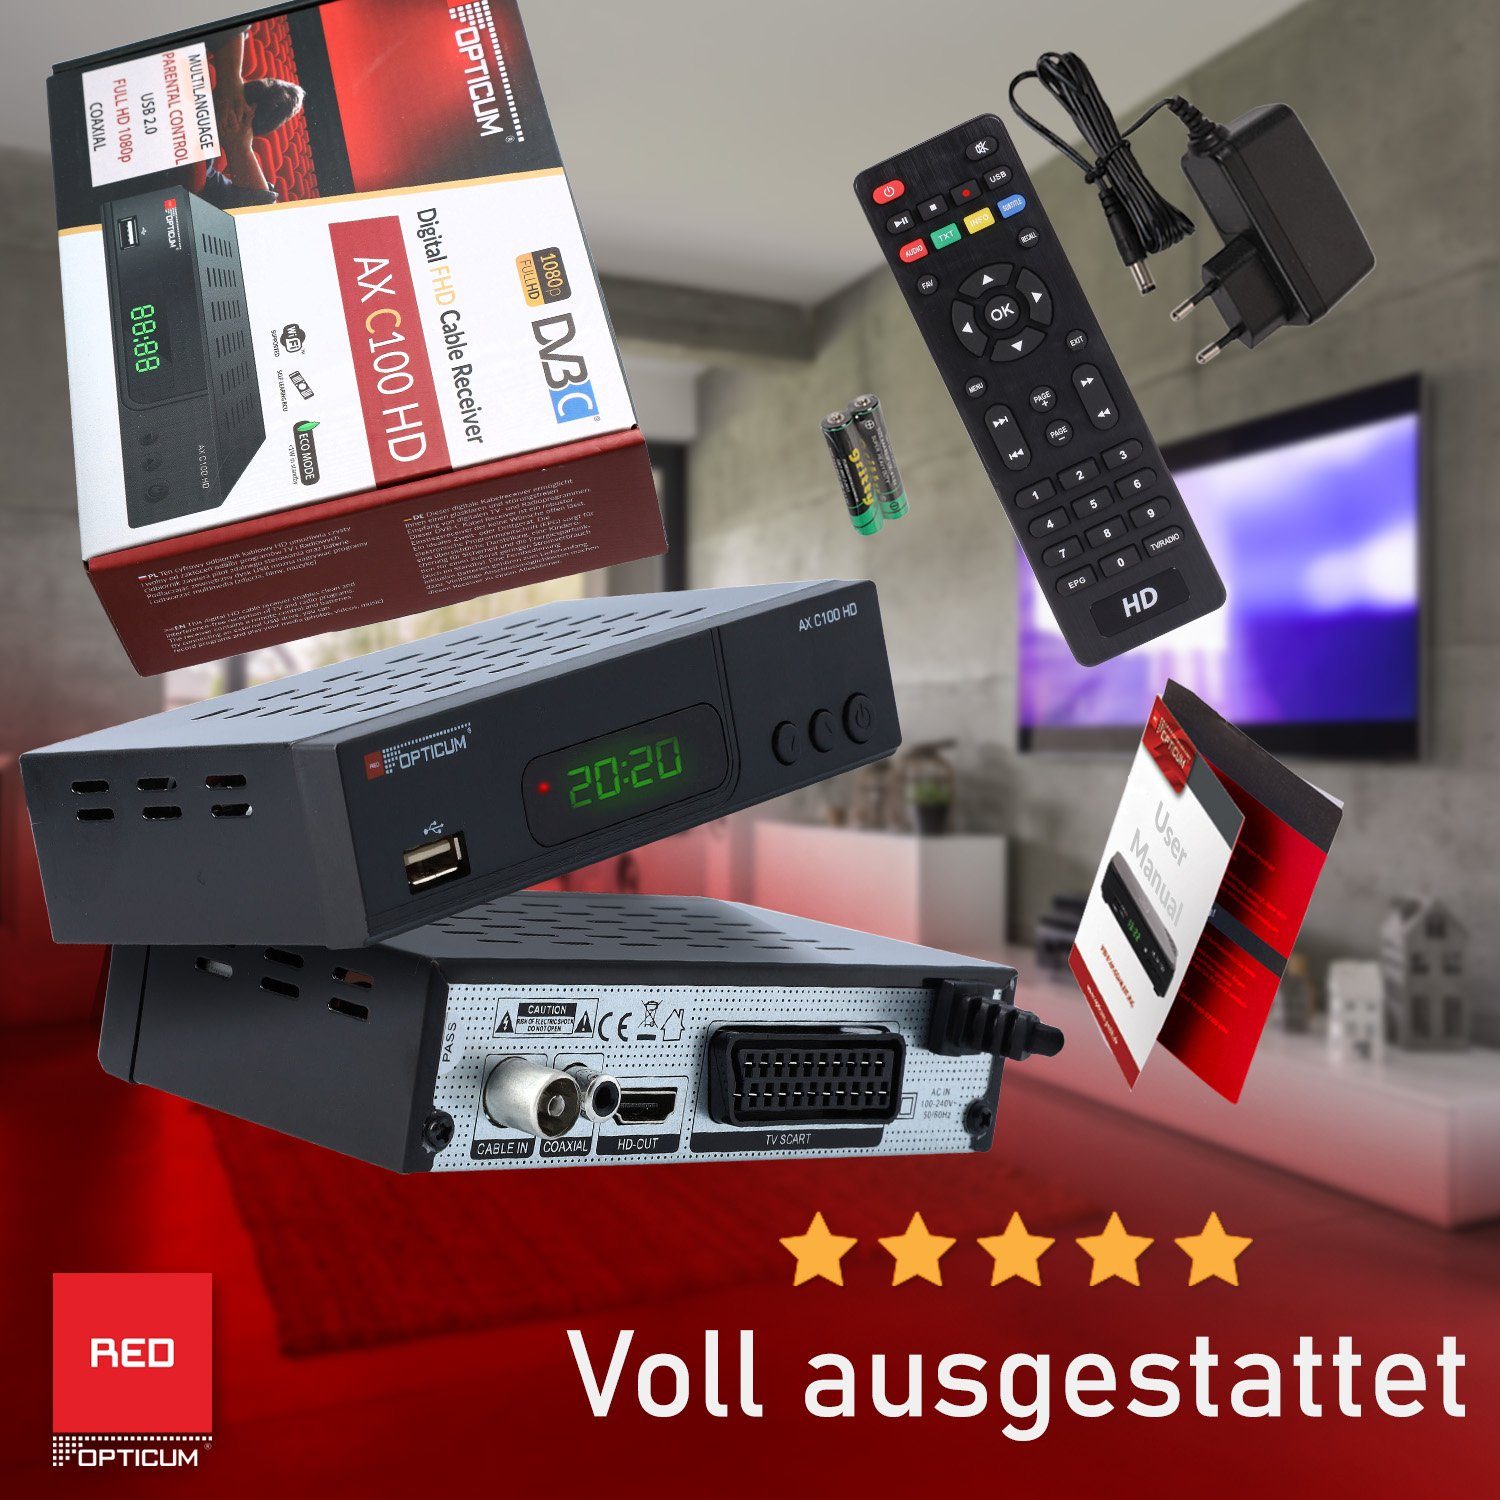 RED OPTICUM HD AX (EPG, HDMI, HD DVB-C C100 Full Kabel-Receiver Kabelfernsehen) USB, SCART, für schwarz Receiver mit Aufnahmefunktion Receiver Coaxial Audio